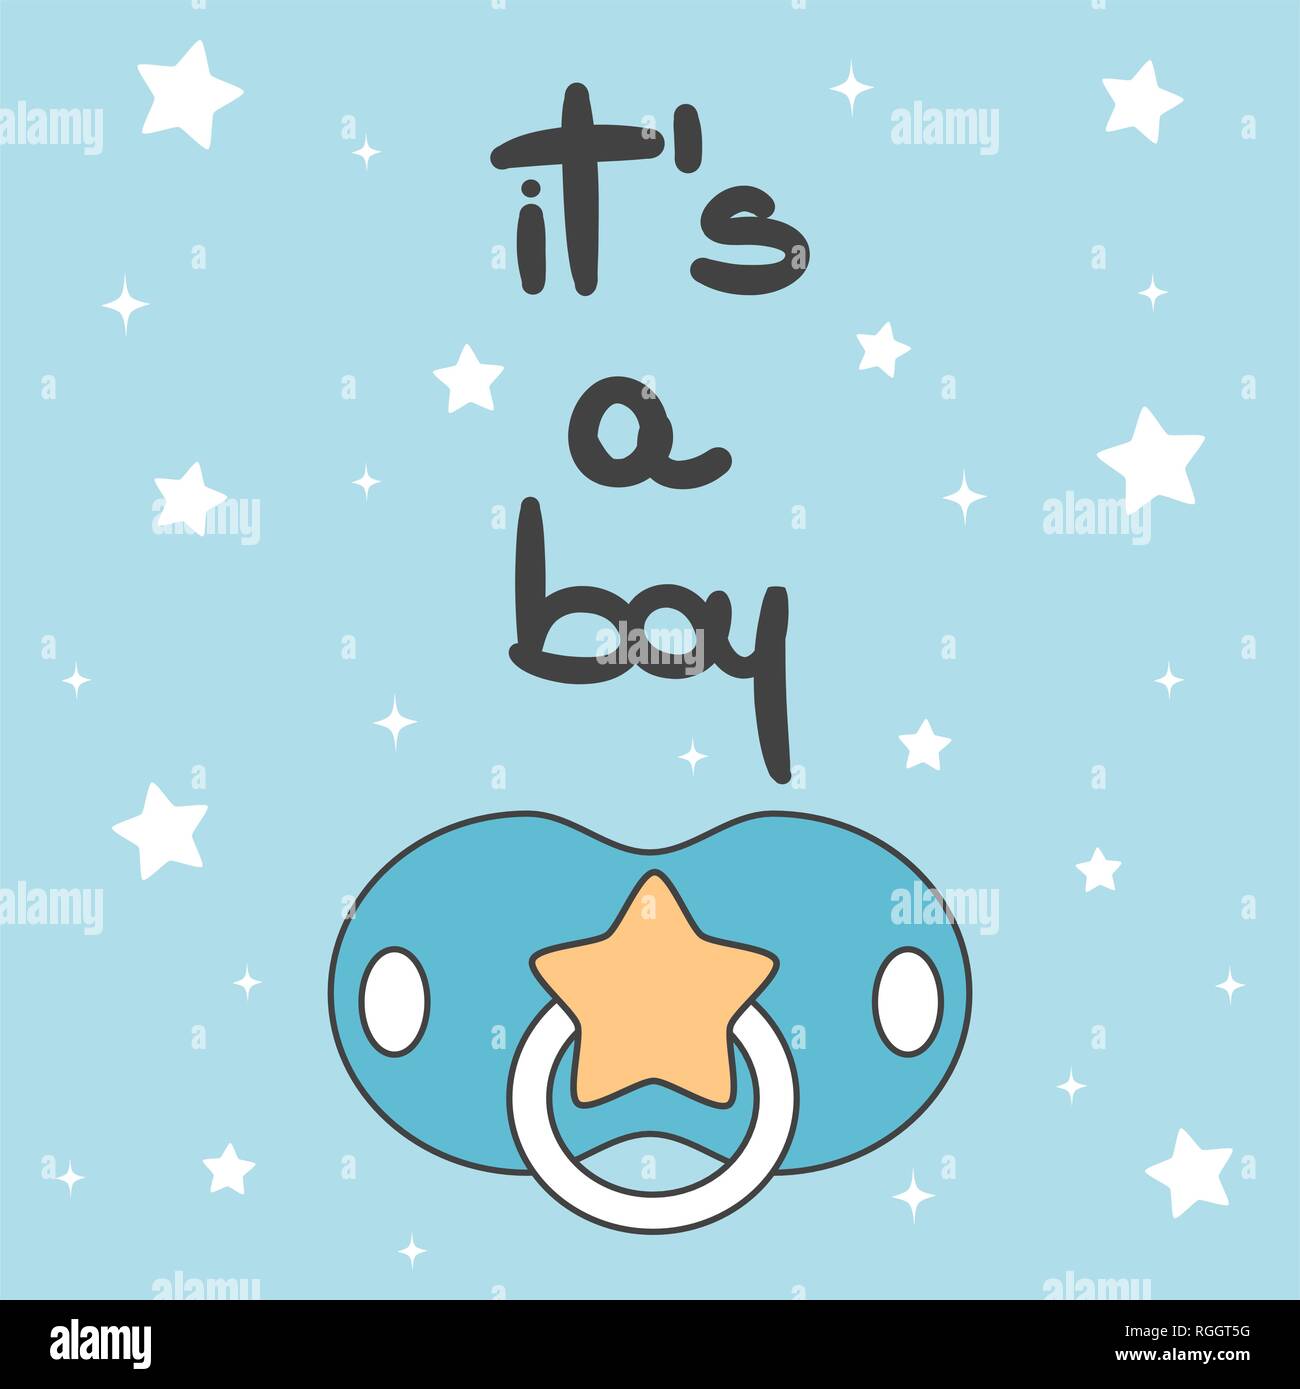 Cute Vector Baby Dusche Card Einladung Mit Handgezeichneten Schriftzug Es Ist Ein Junge Text Mit Schnuller Stock Vektorgrafik Alamy